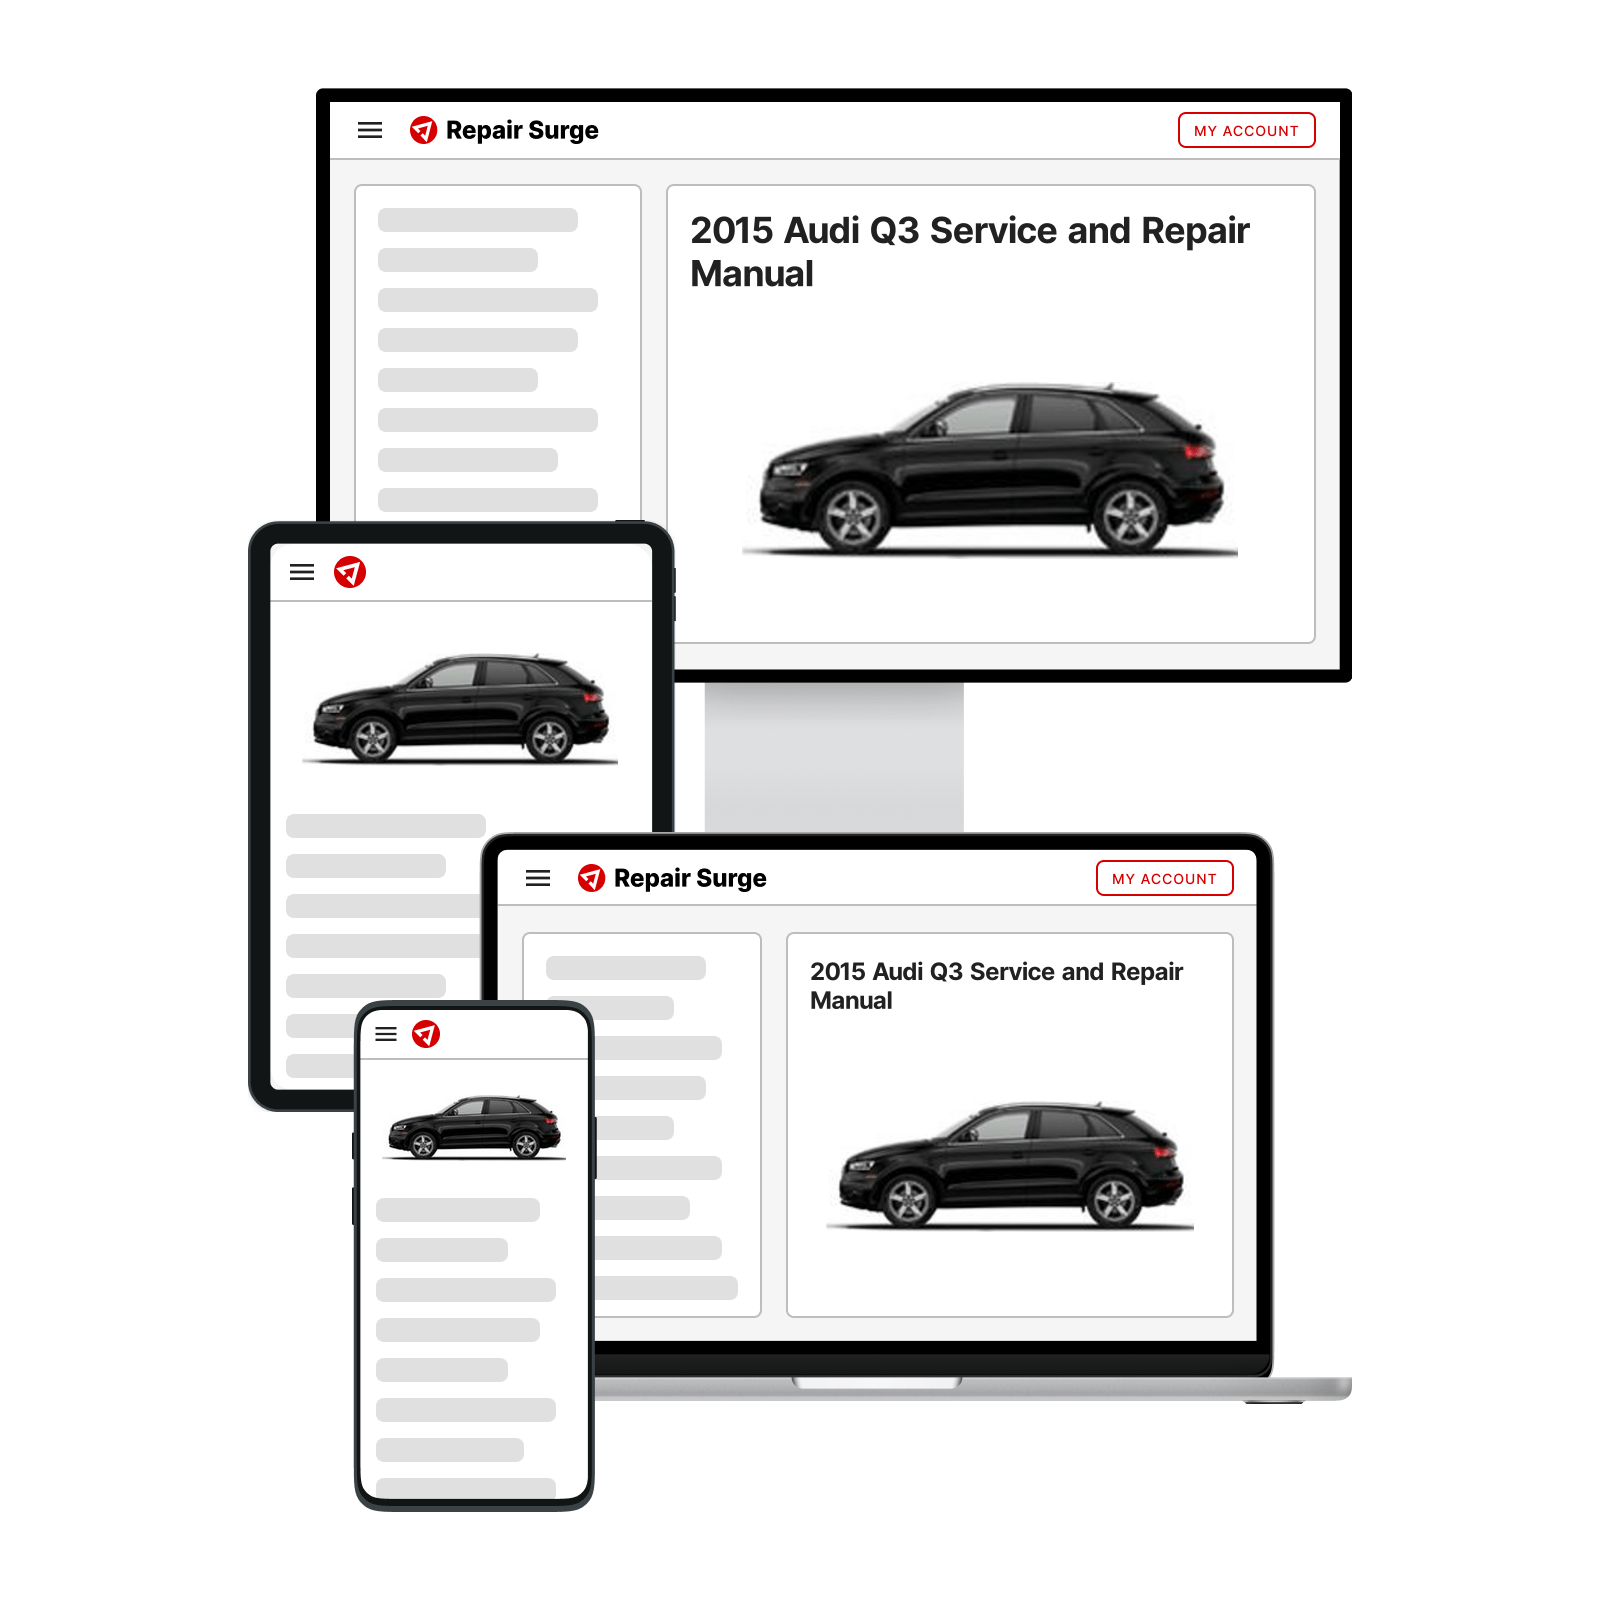 2015 Audi Q3 service and repair manual hero image